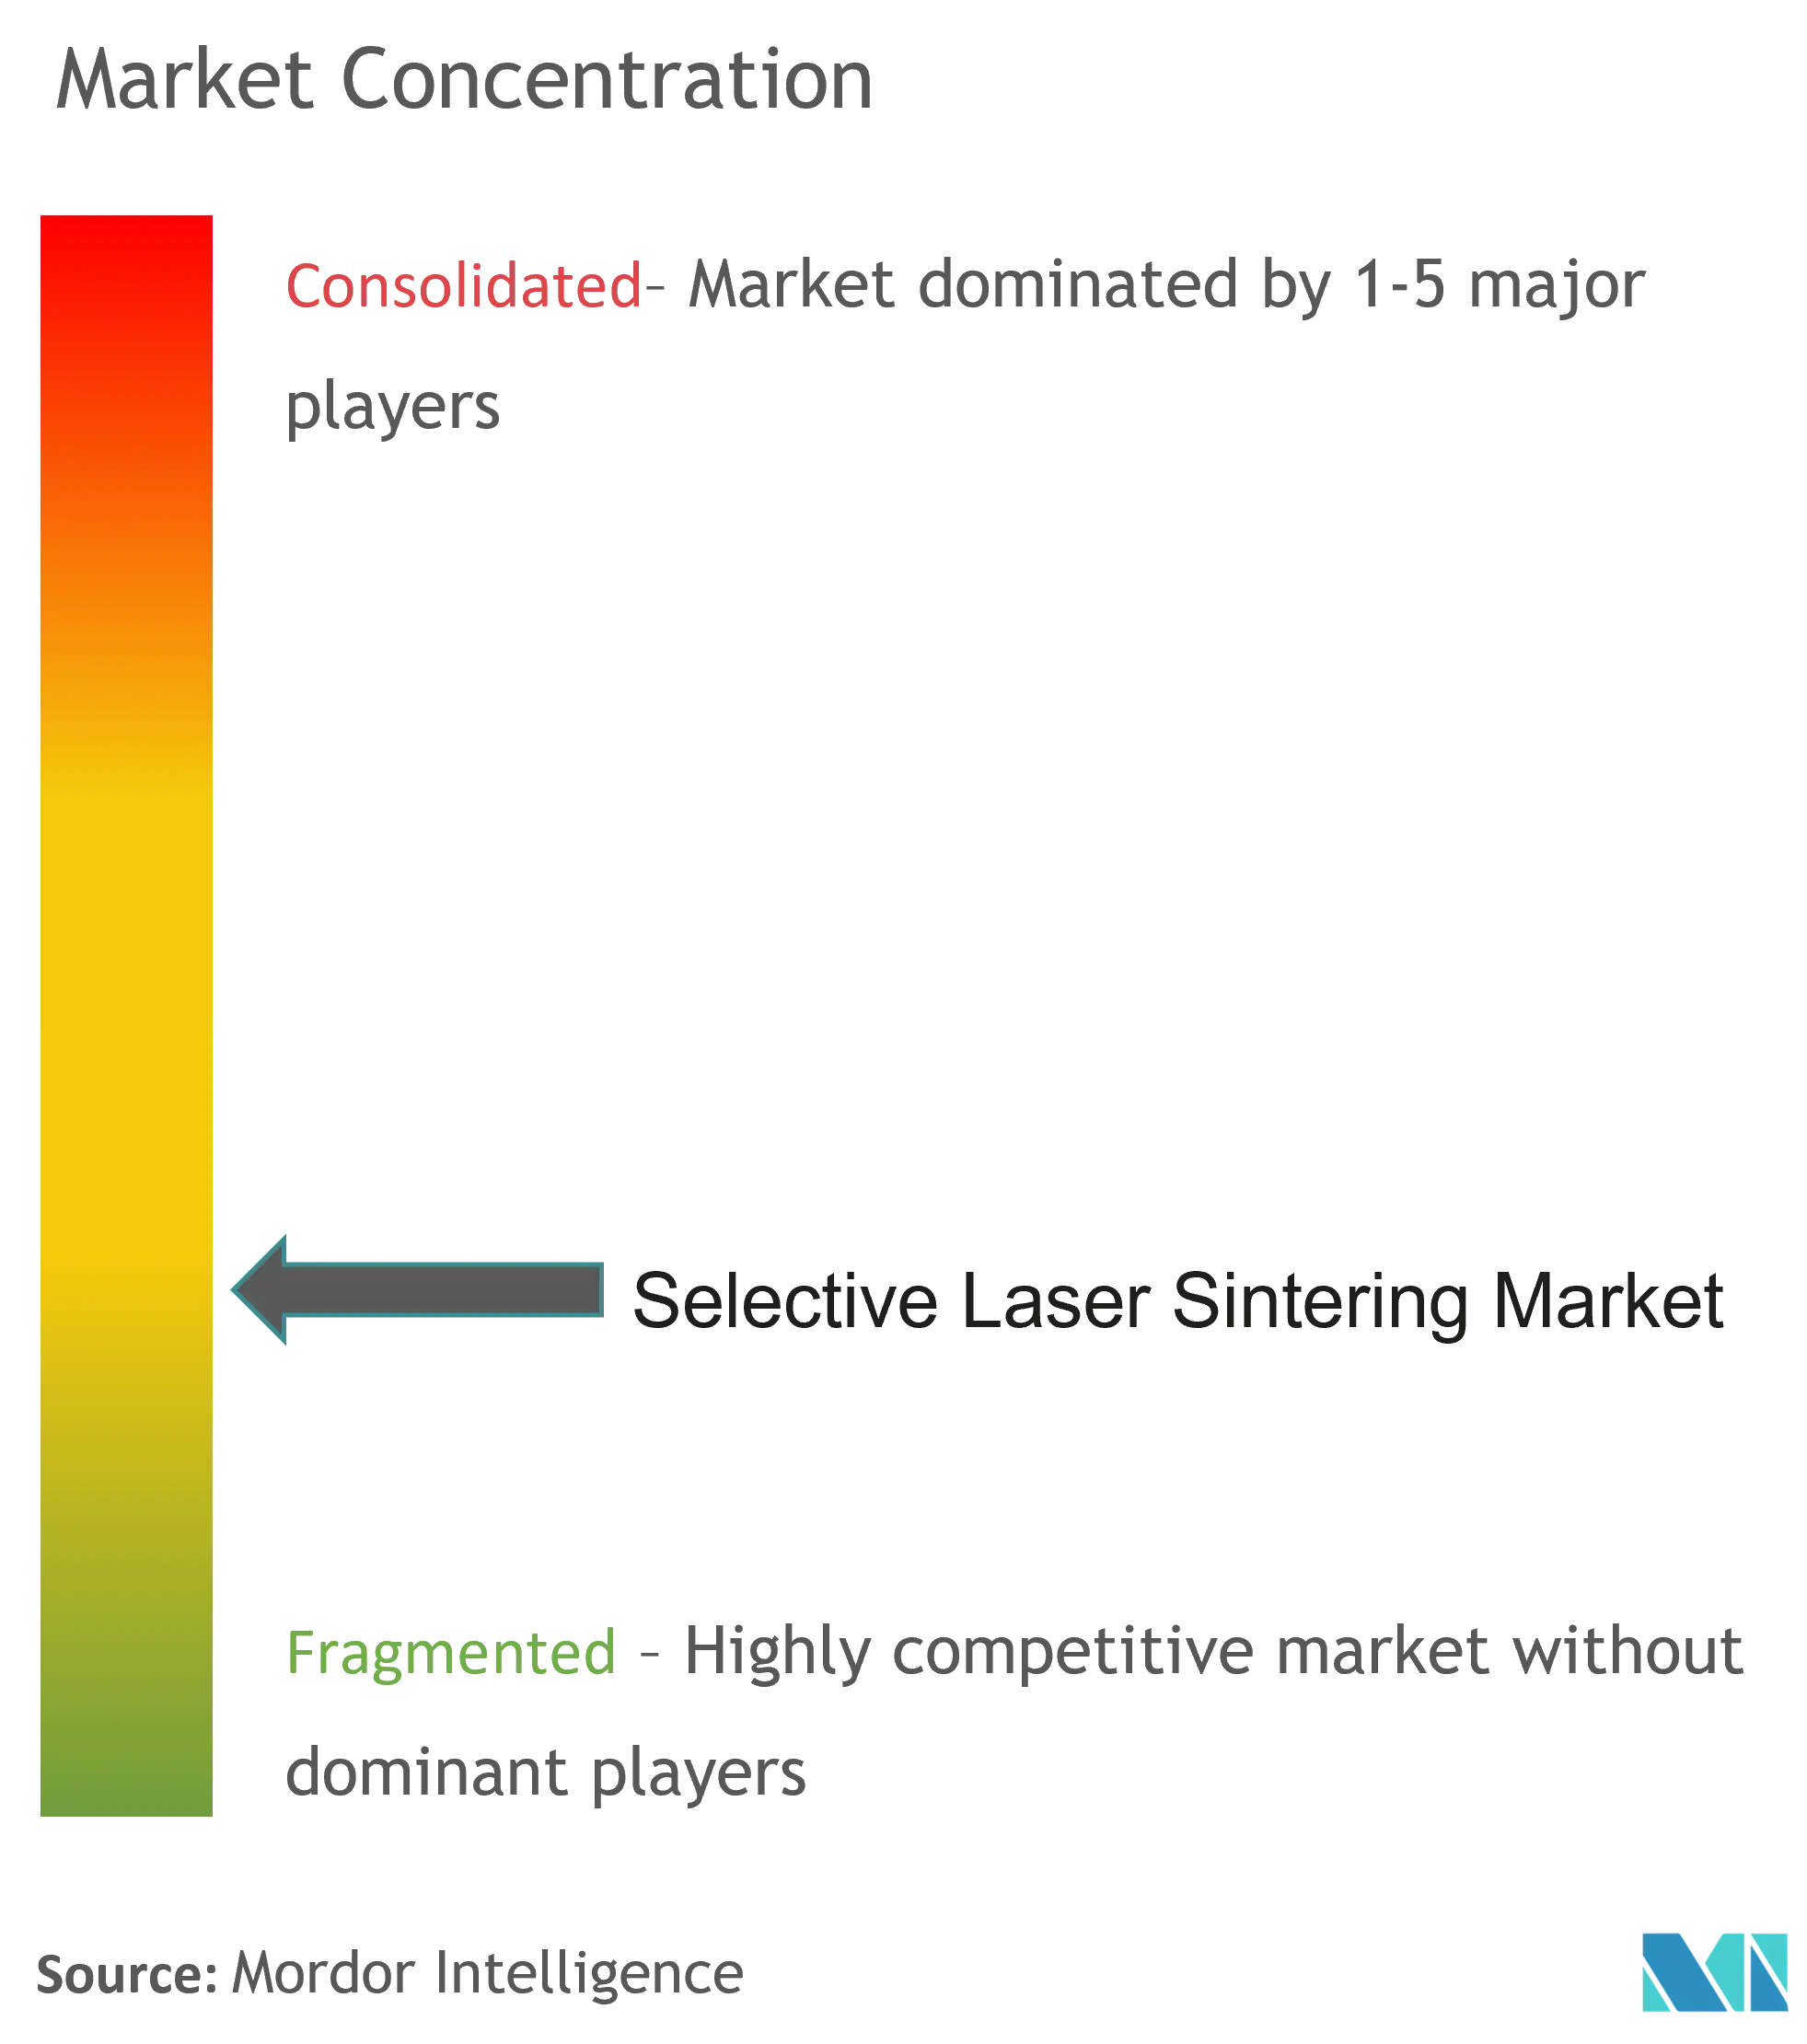 Рынок селективного лазерного спекания - Market Concentration.png